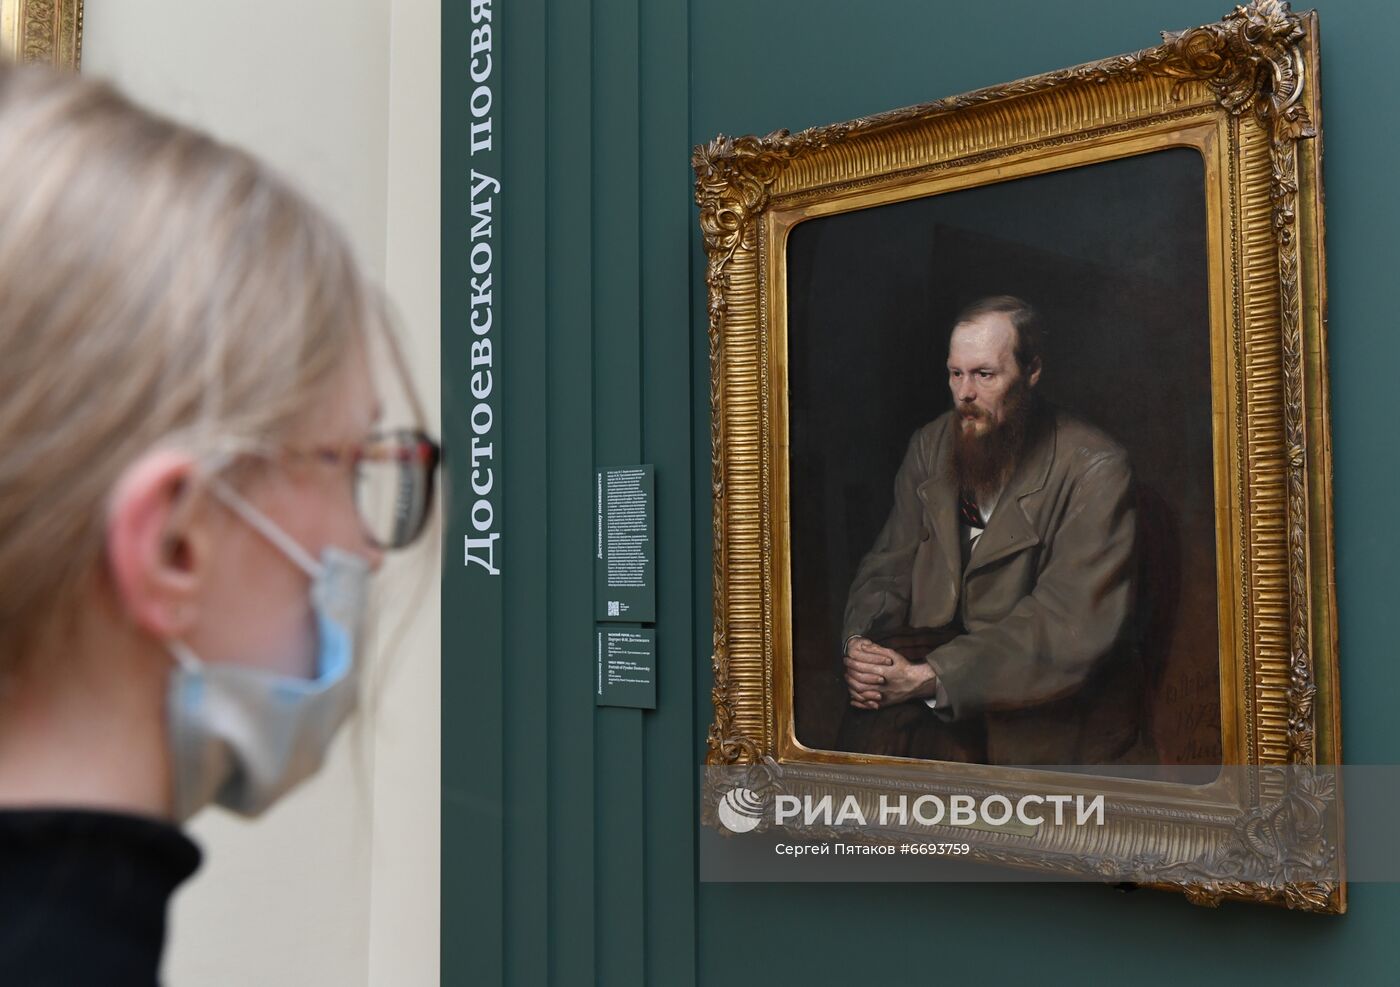 Выставка "Достоевскому посвящается" в Третьяковской галерее